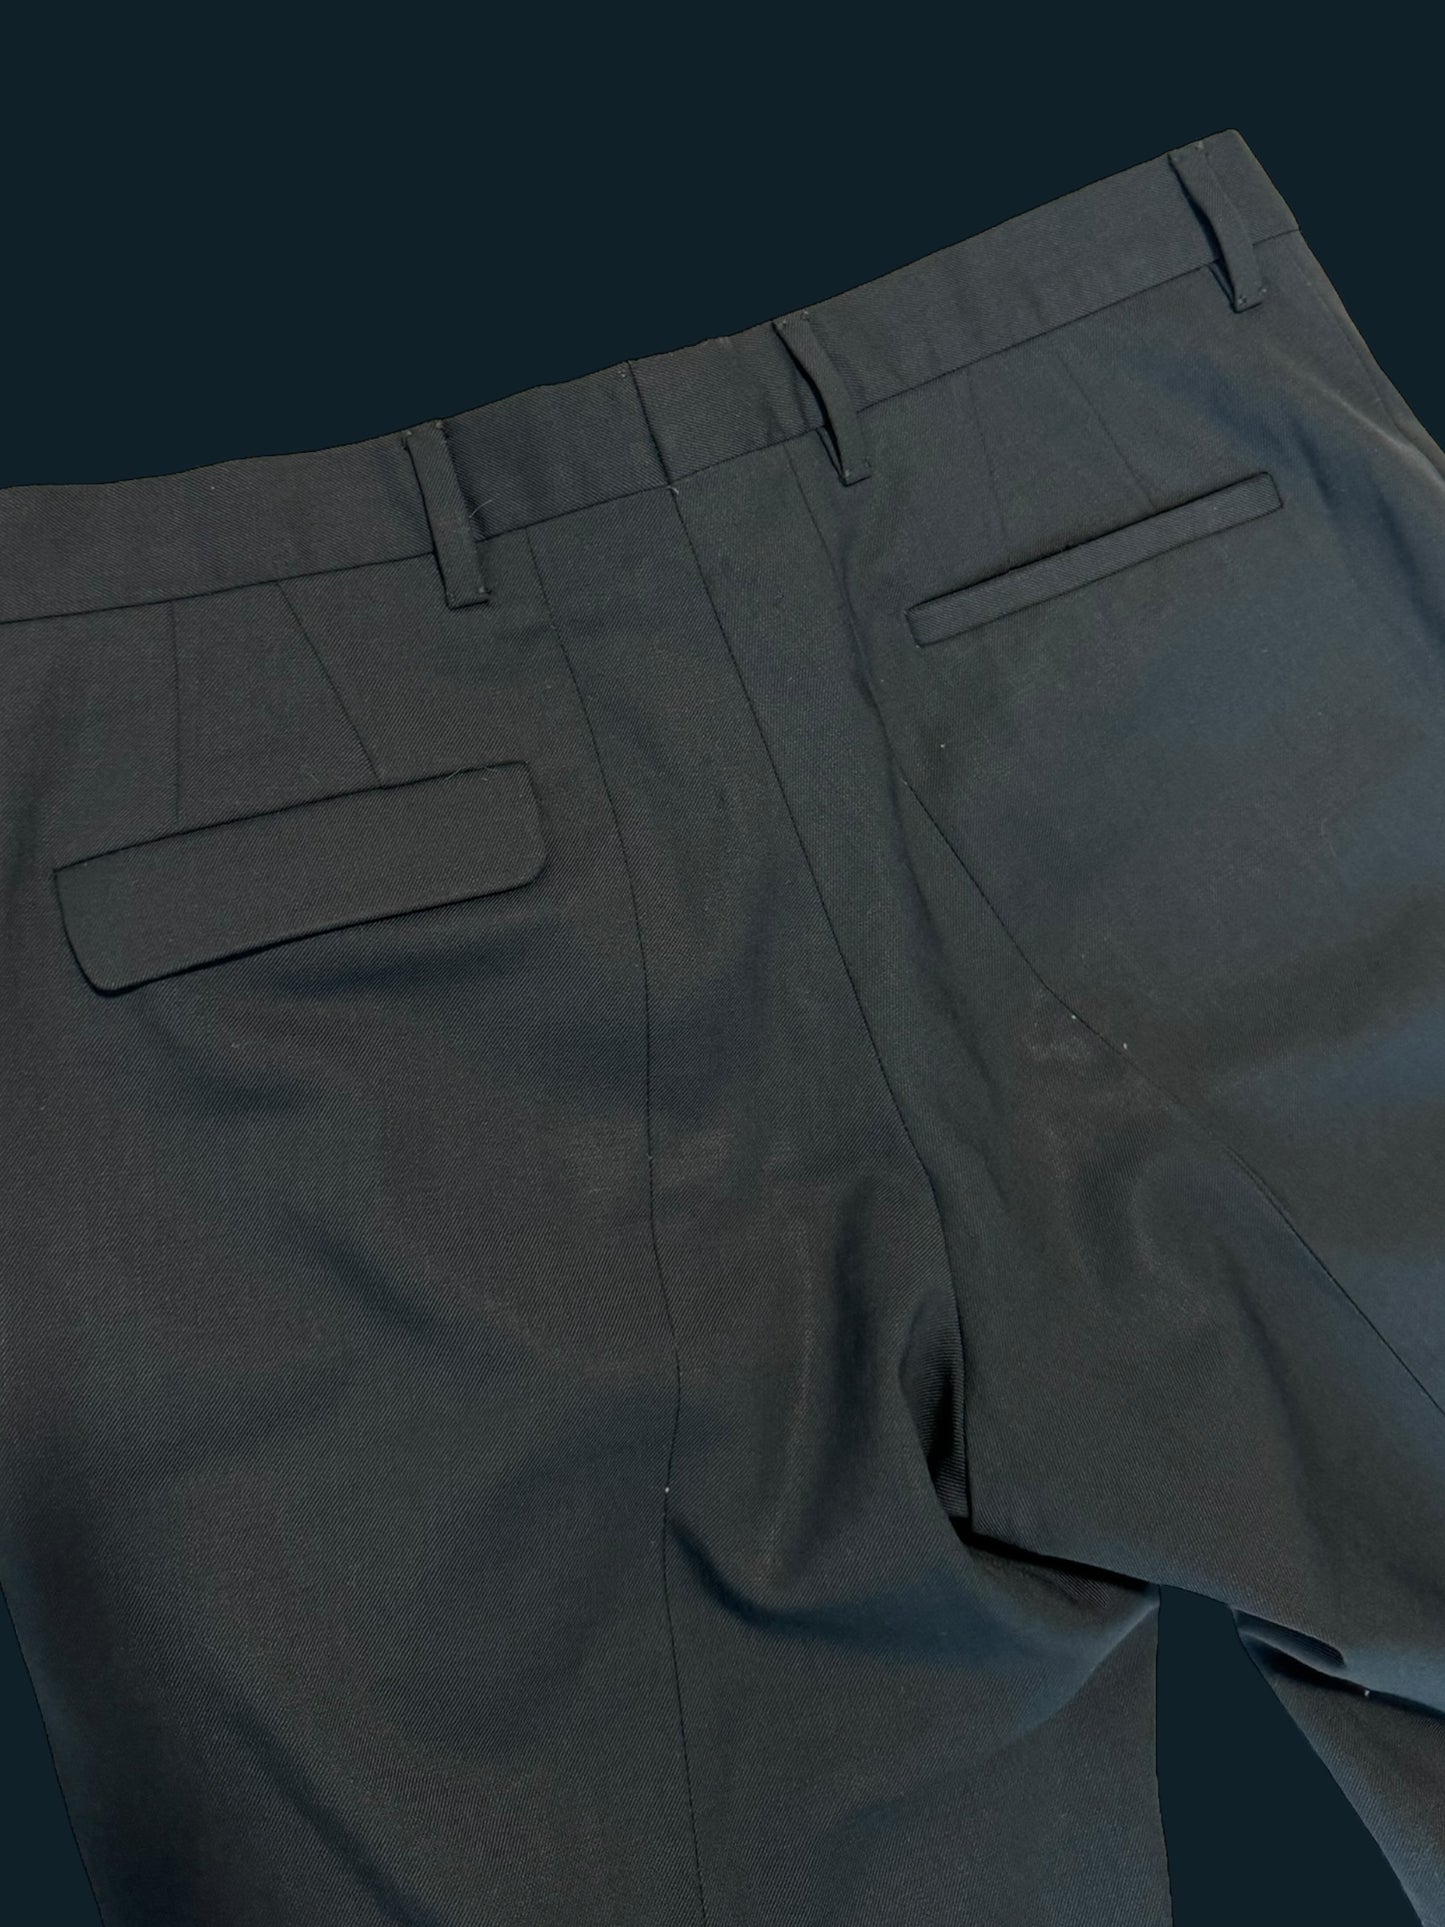 MIU MIU grey pants size medium